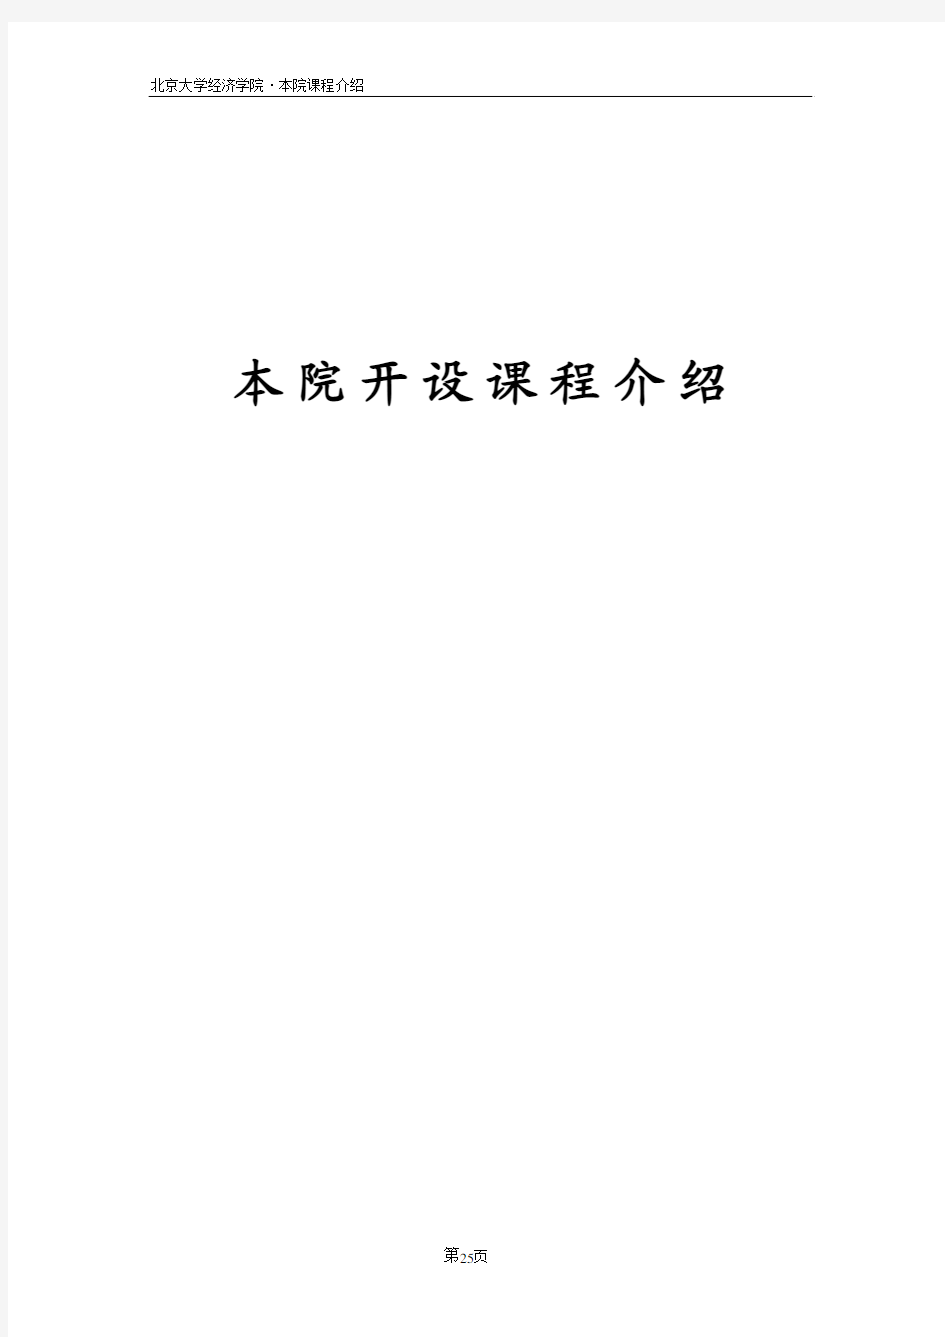 北京大学本科生教学手册(经济学院部分)课程介绍